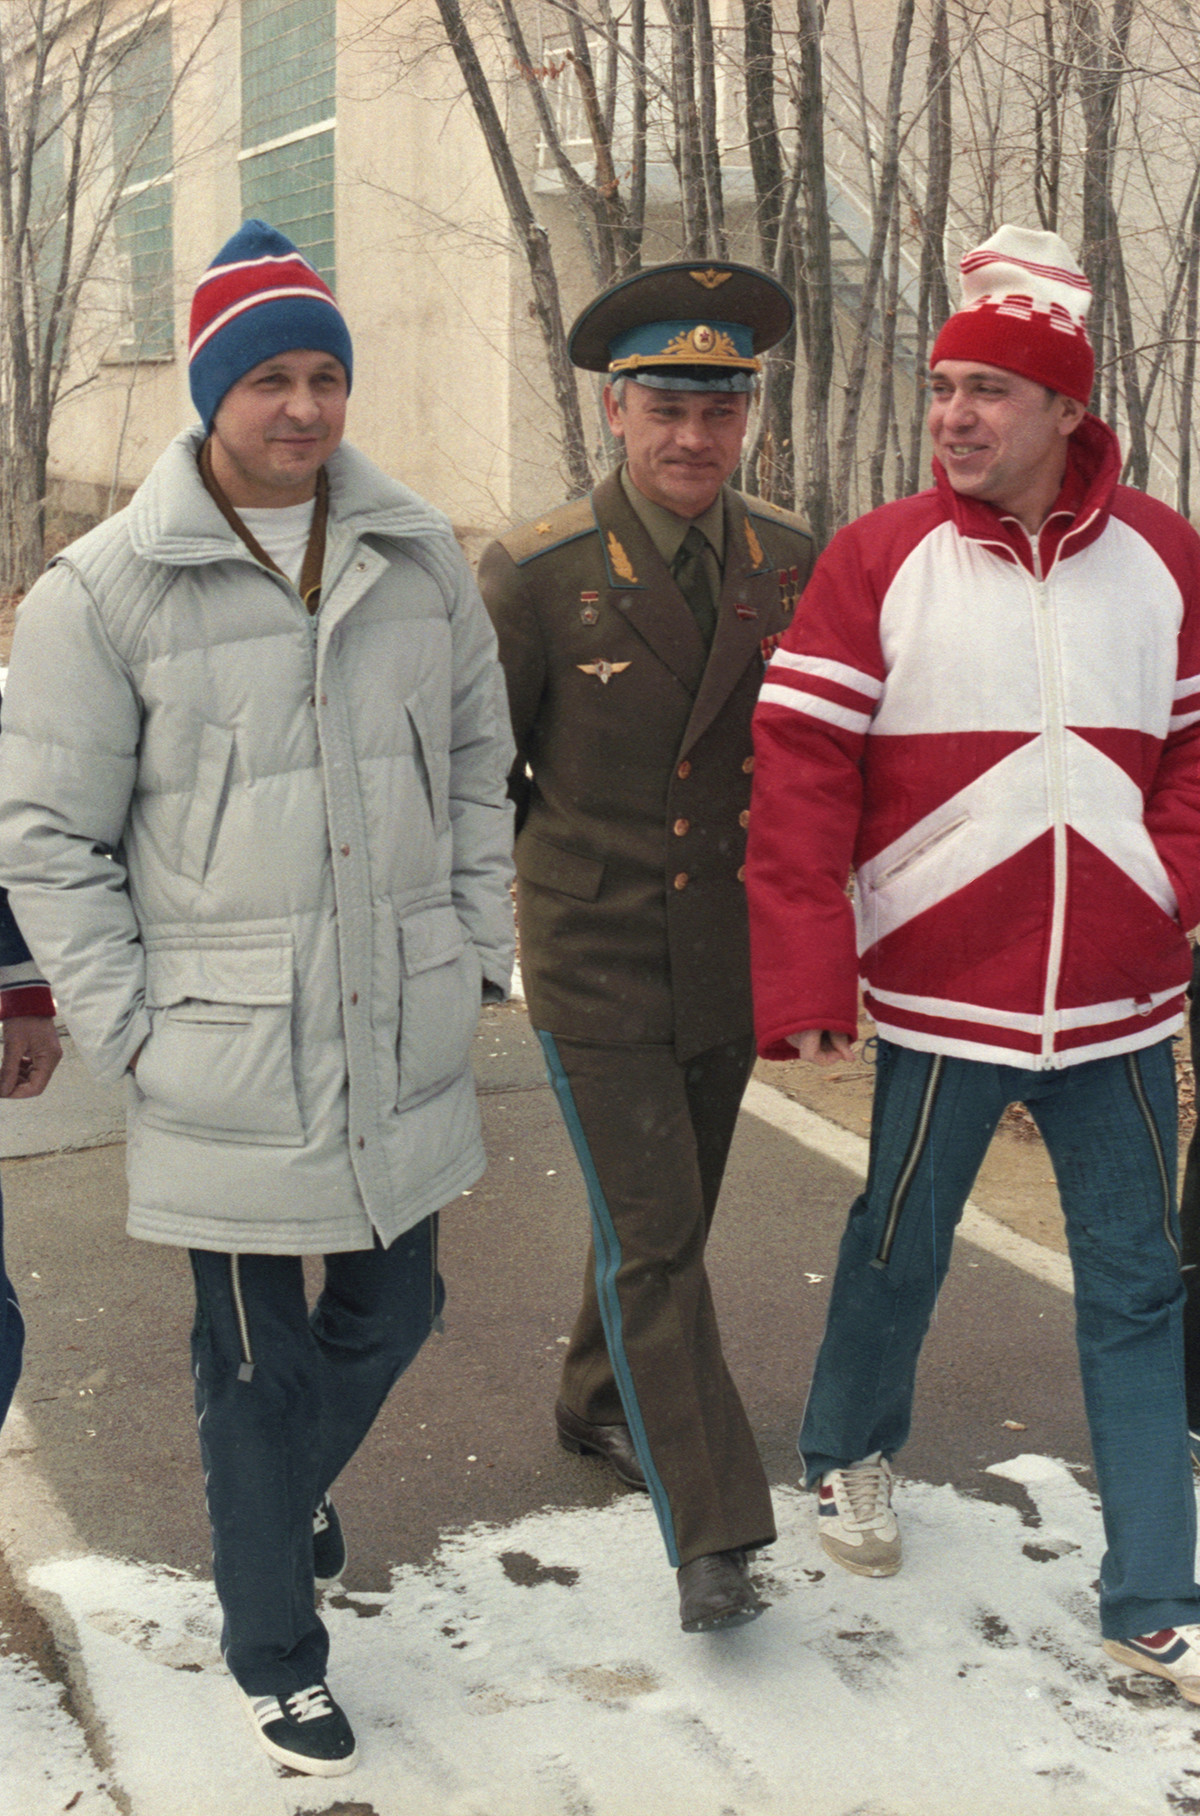 Les pilotes-cosmonautes d'URSS Viktor Savinykh, Vladimir Djanibekov et Alexandre Volkov (de gauche à droite) lors d'une promenade à Baïkonour, au Kazakhstan soviétique, le 23 novembre 1985